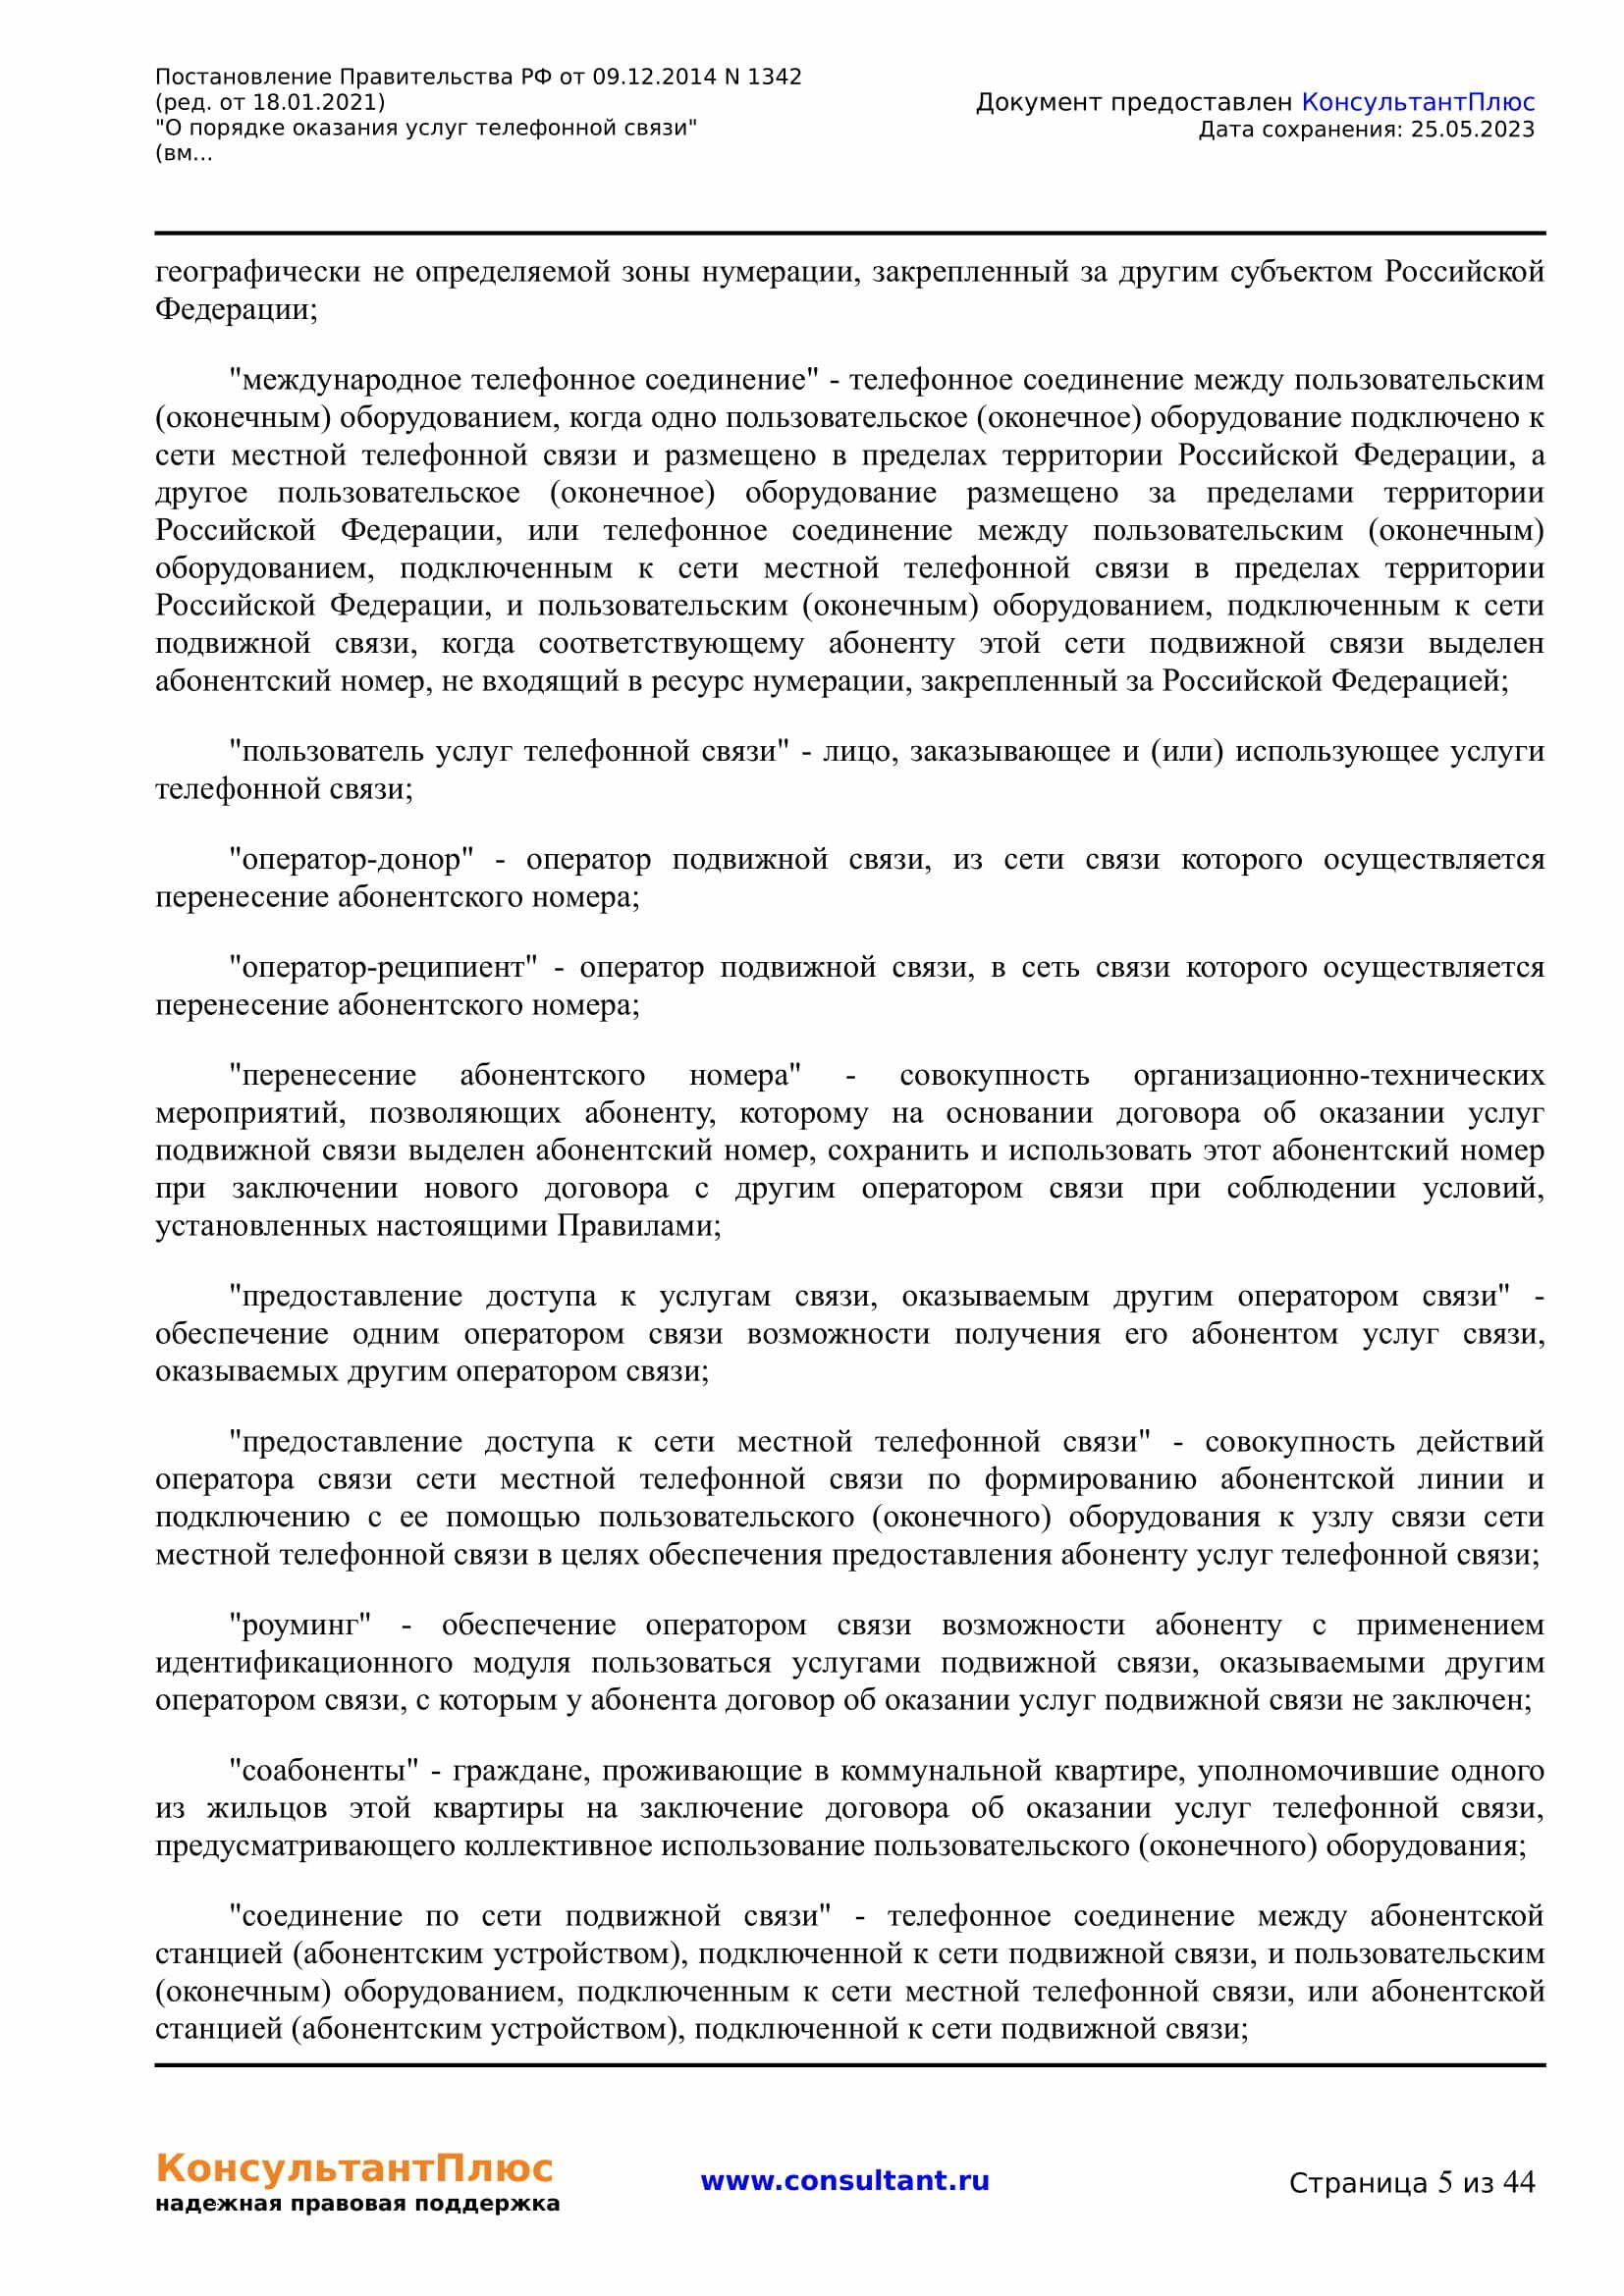 Постановление Правительства РФ от 23.12.2021 N 2403